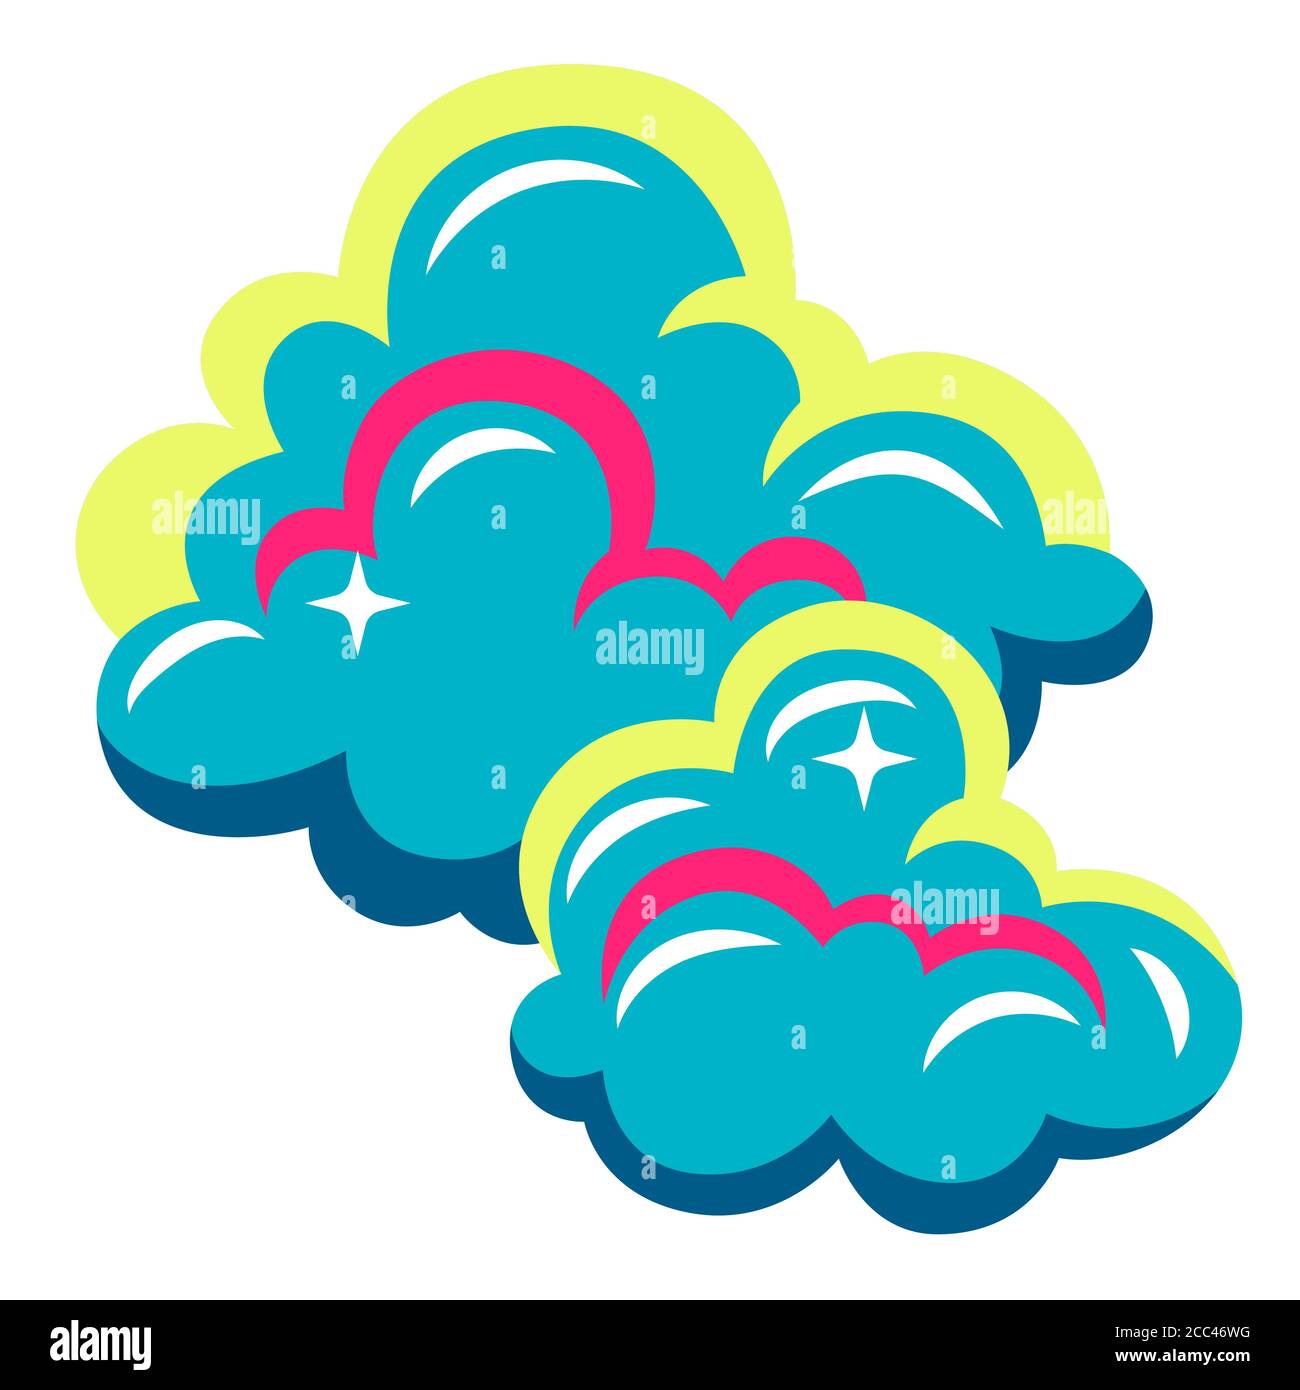 Ilustración de nubes estilizadas abstractas o humo. Ilustración del Vector